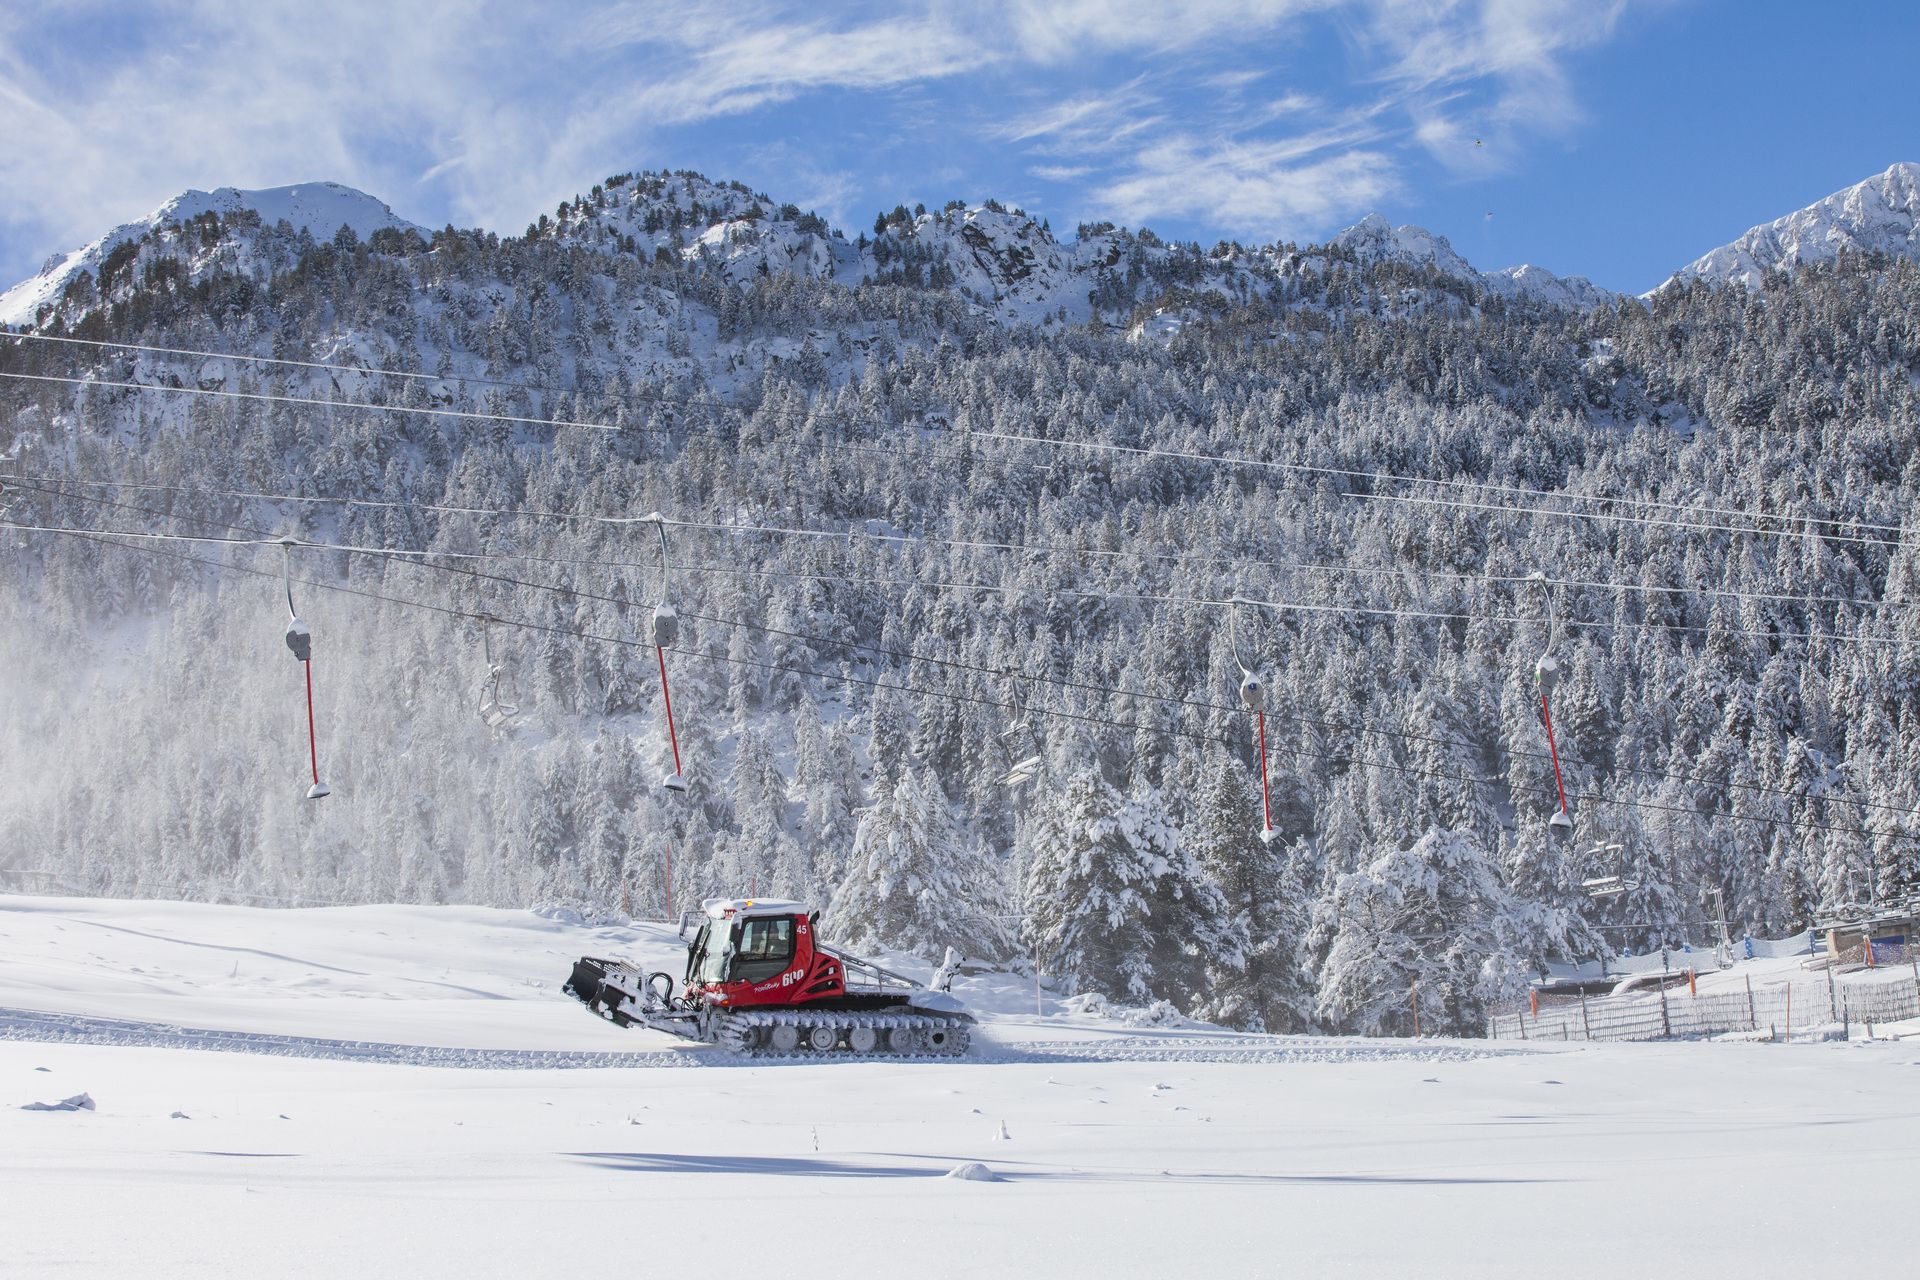 Imagenes de Grandvalira en invierno con nieve